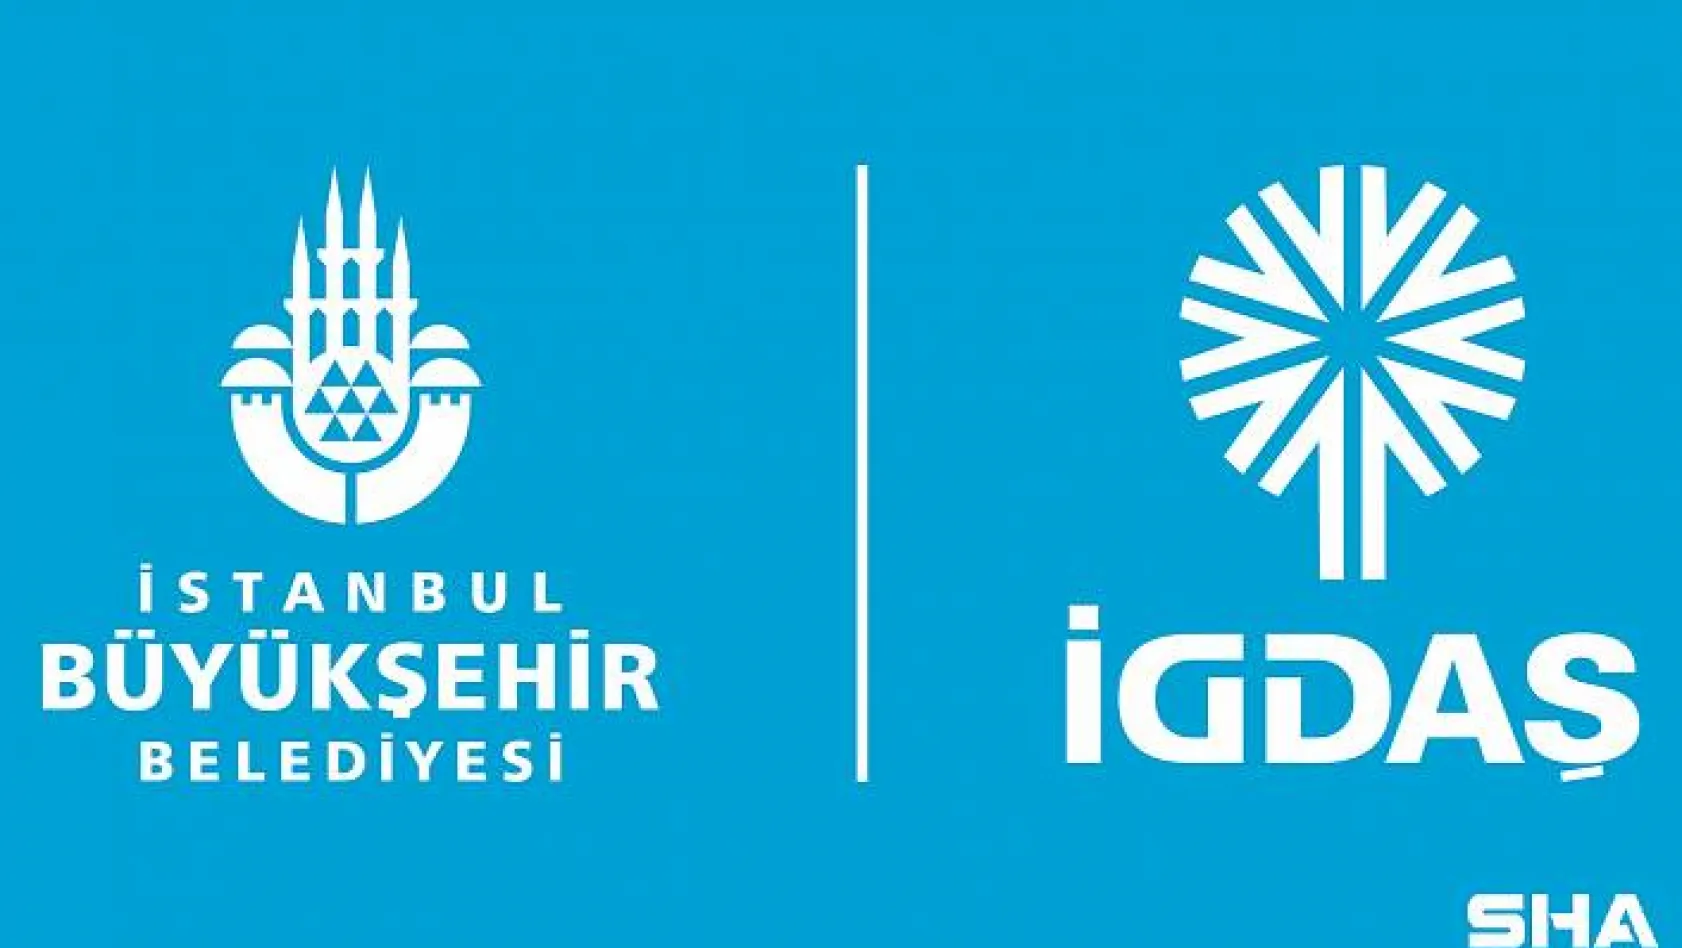 İGDAŞ'tan, '10 Taksitle' Ödeme Fırsatı